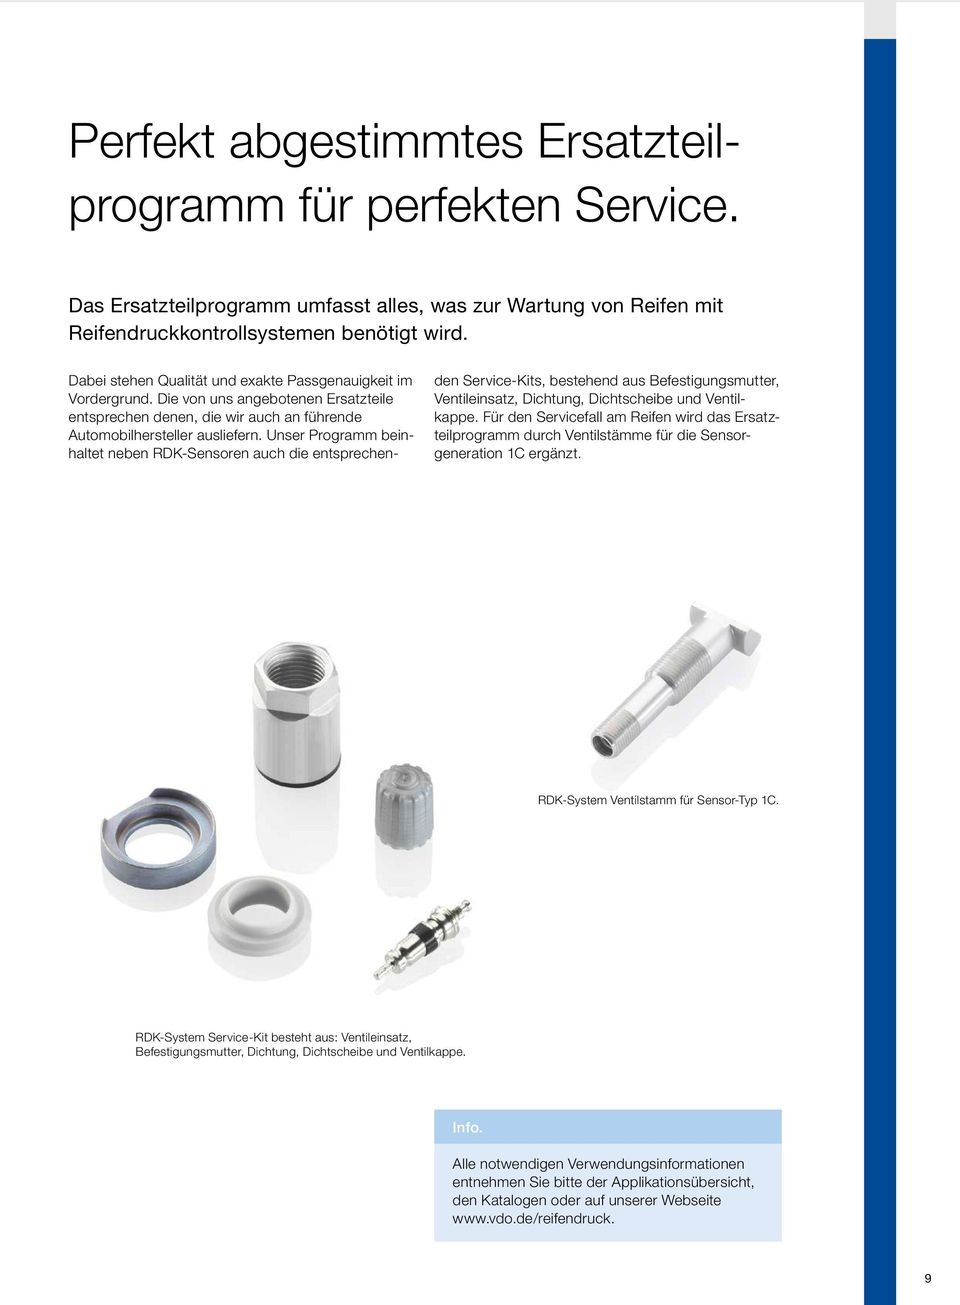 Unser Programm beinhaltet neben RDK Sensoren auch die entsprechenden Service-Kits, bestehend aus Befestigungsmutter, Ventileinsatz, Dichtung, Dichtscheibe und Ventilkappe.